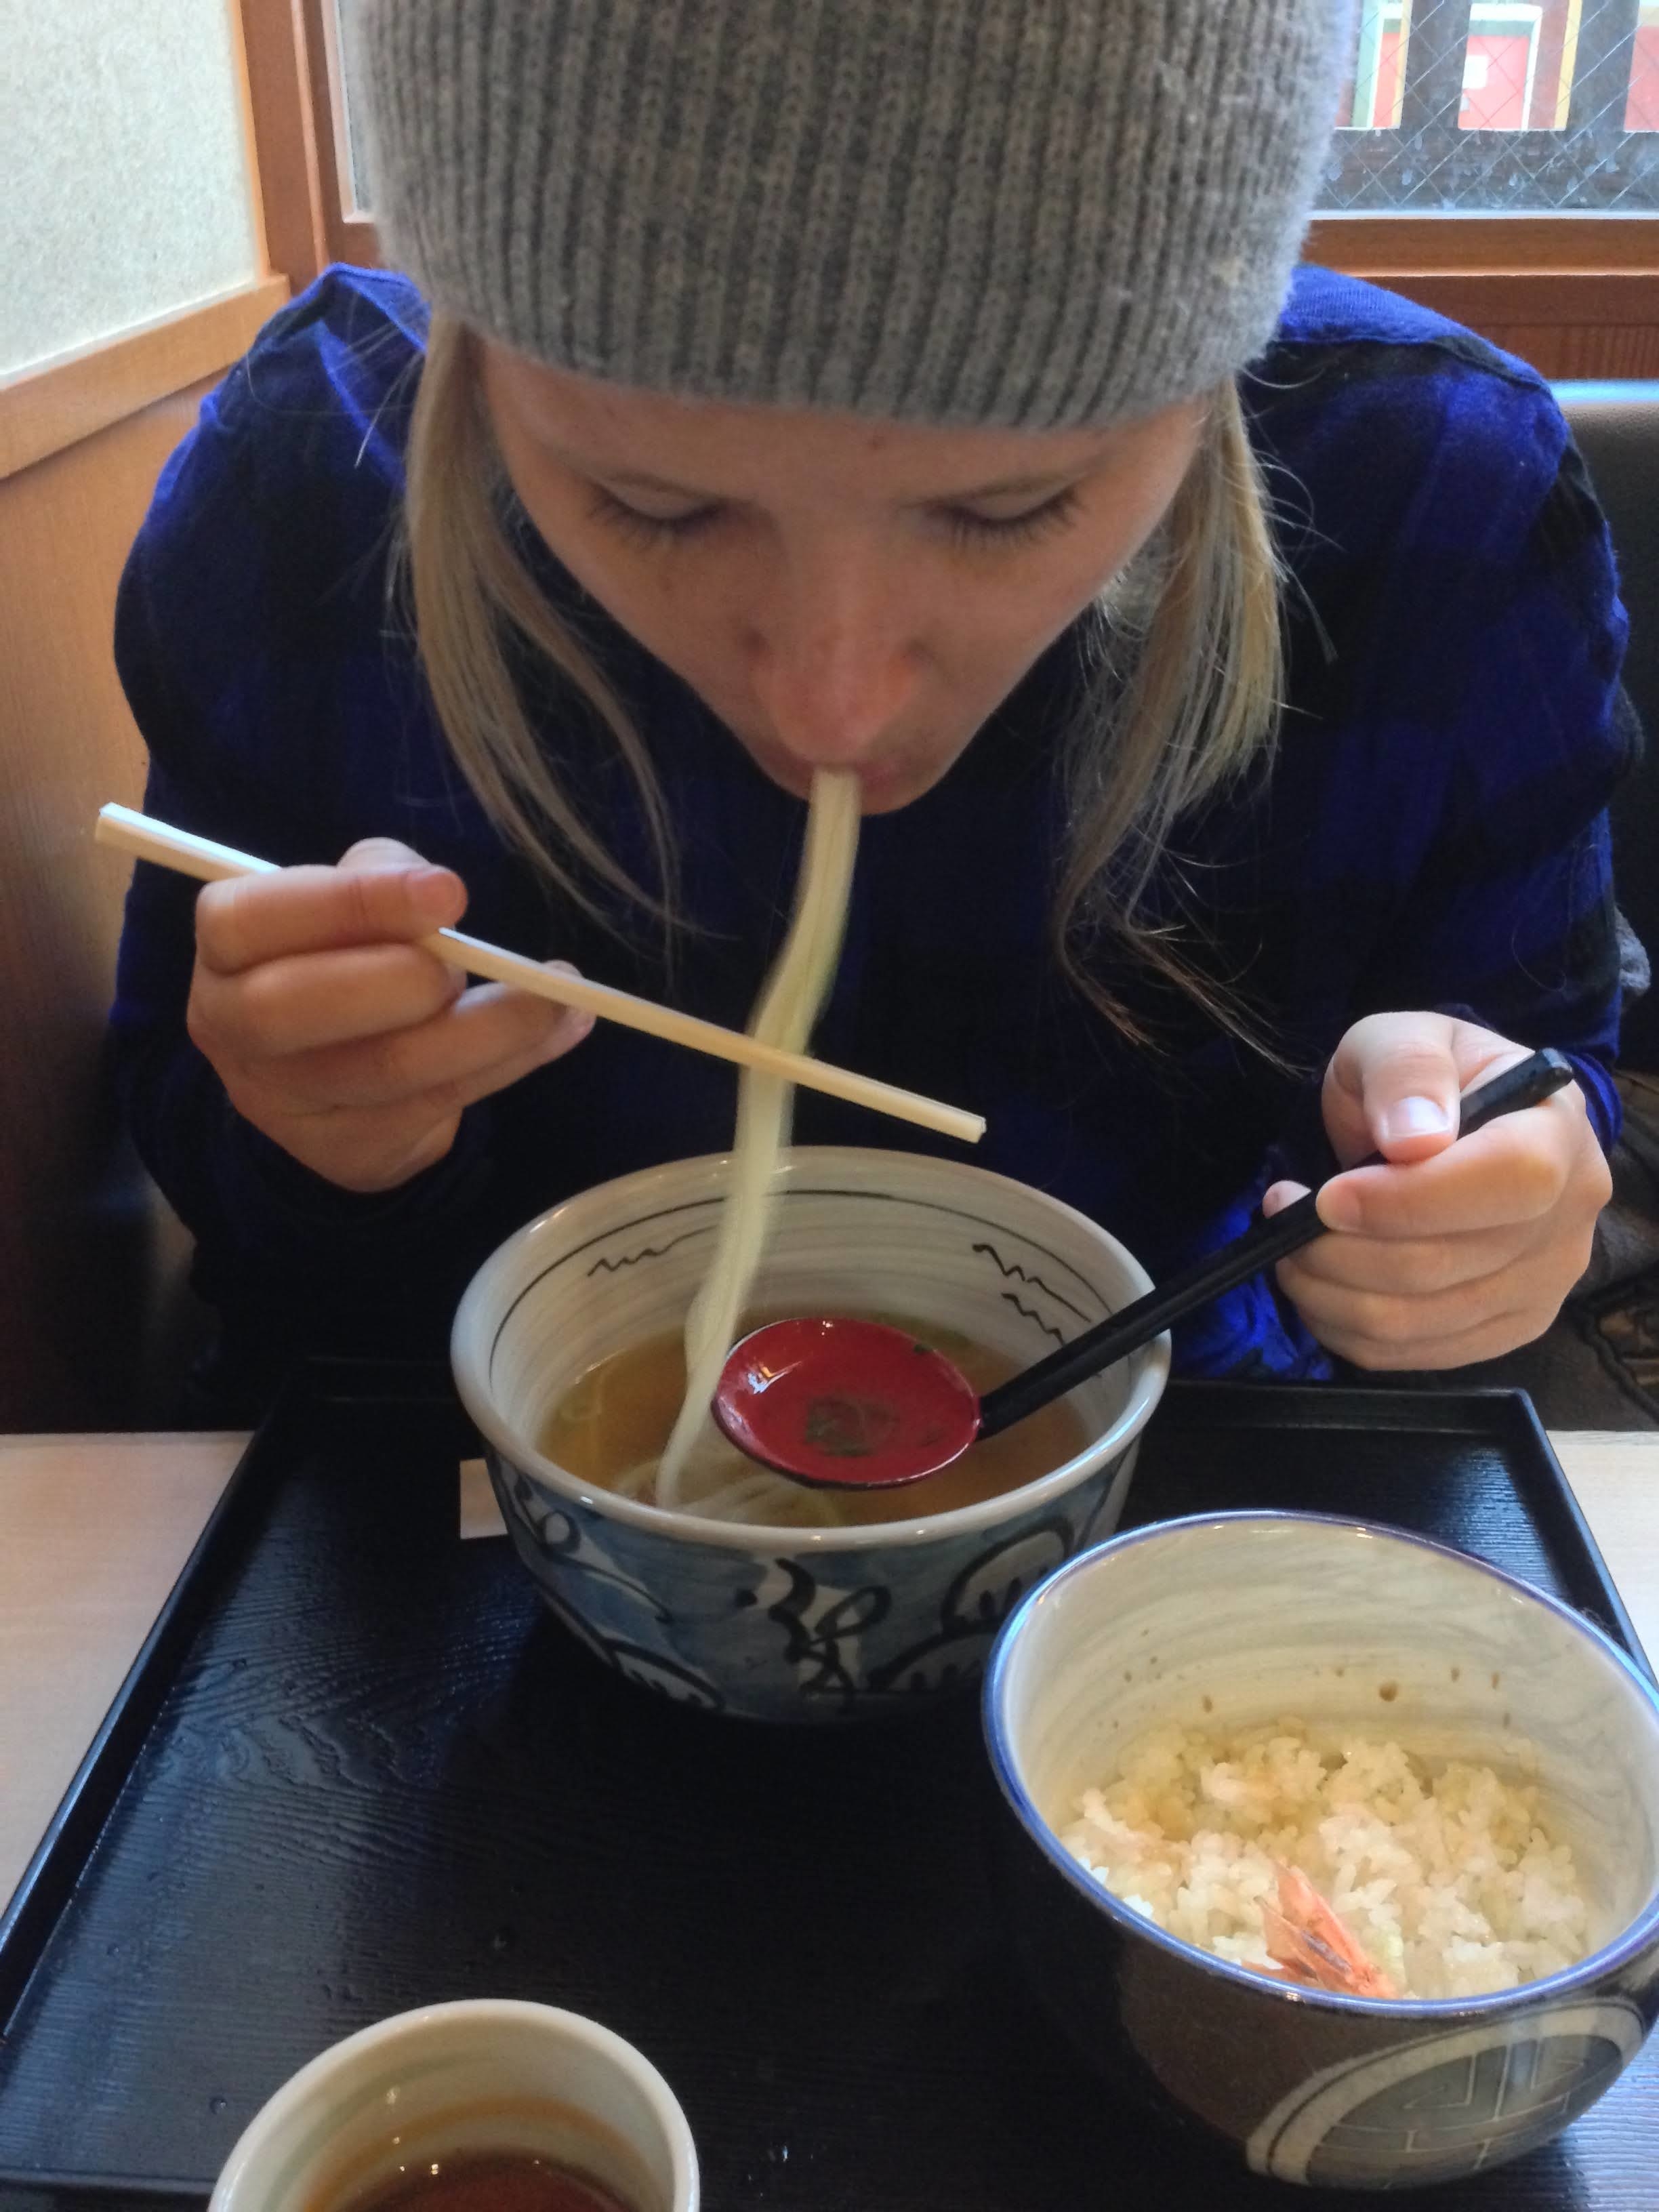 Woman slurping noodles